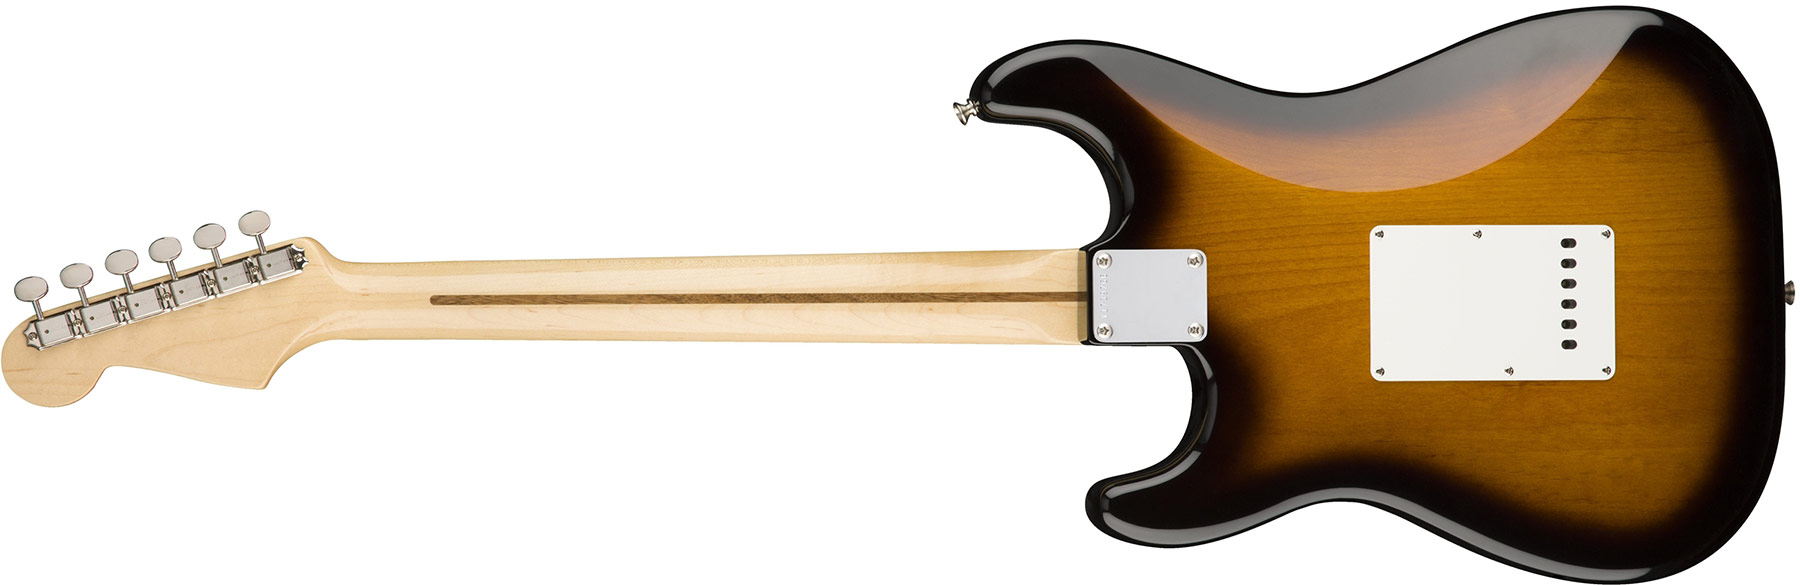 Fender Strat '50s American Original Usa Sss Mn - 2-color Sunburst - E-Gitarre in Str-Form - Variation 3